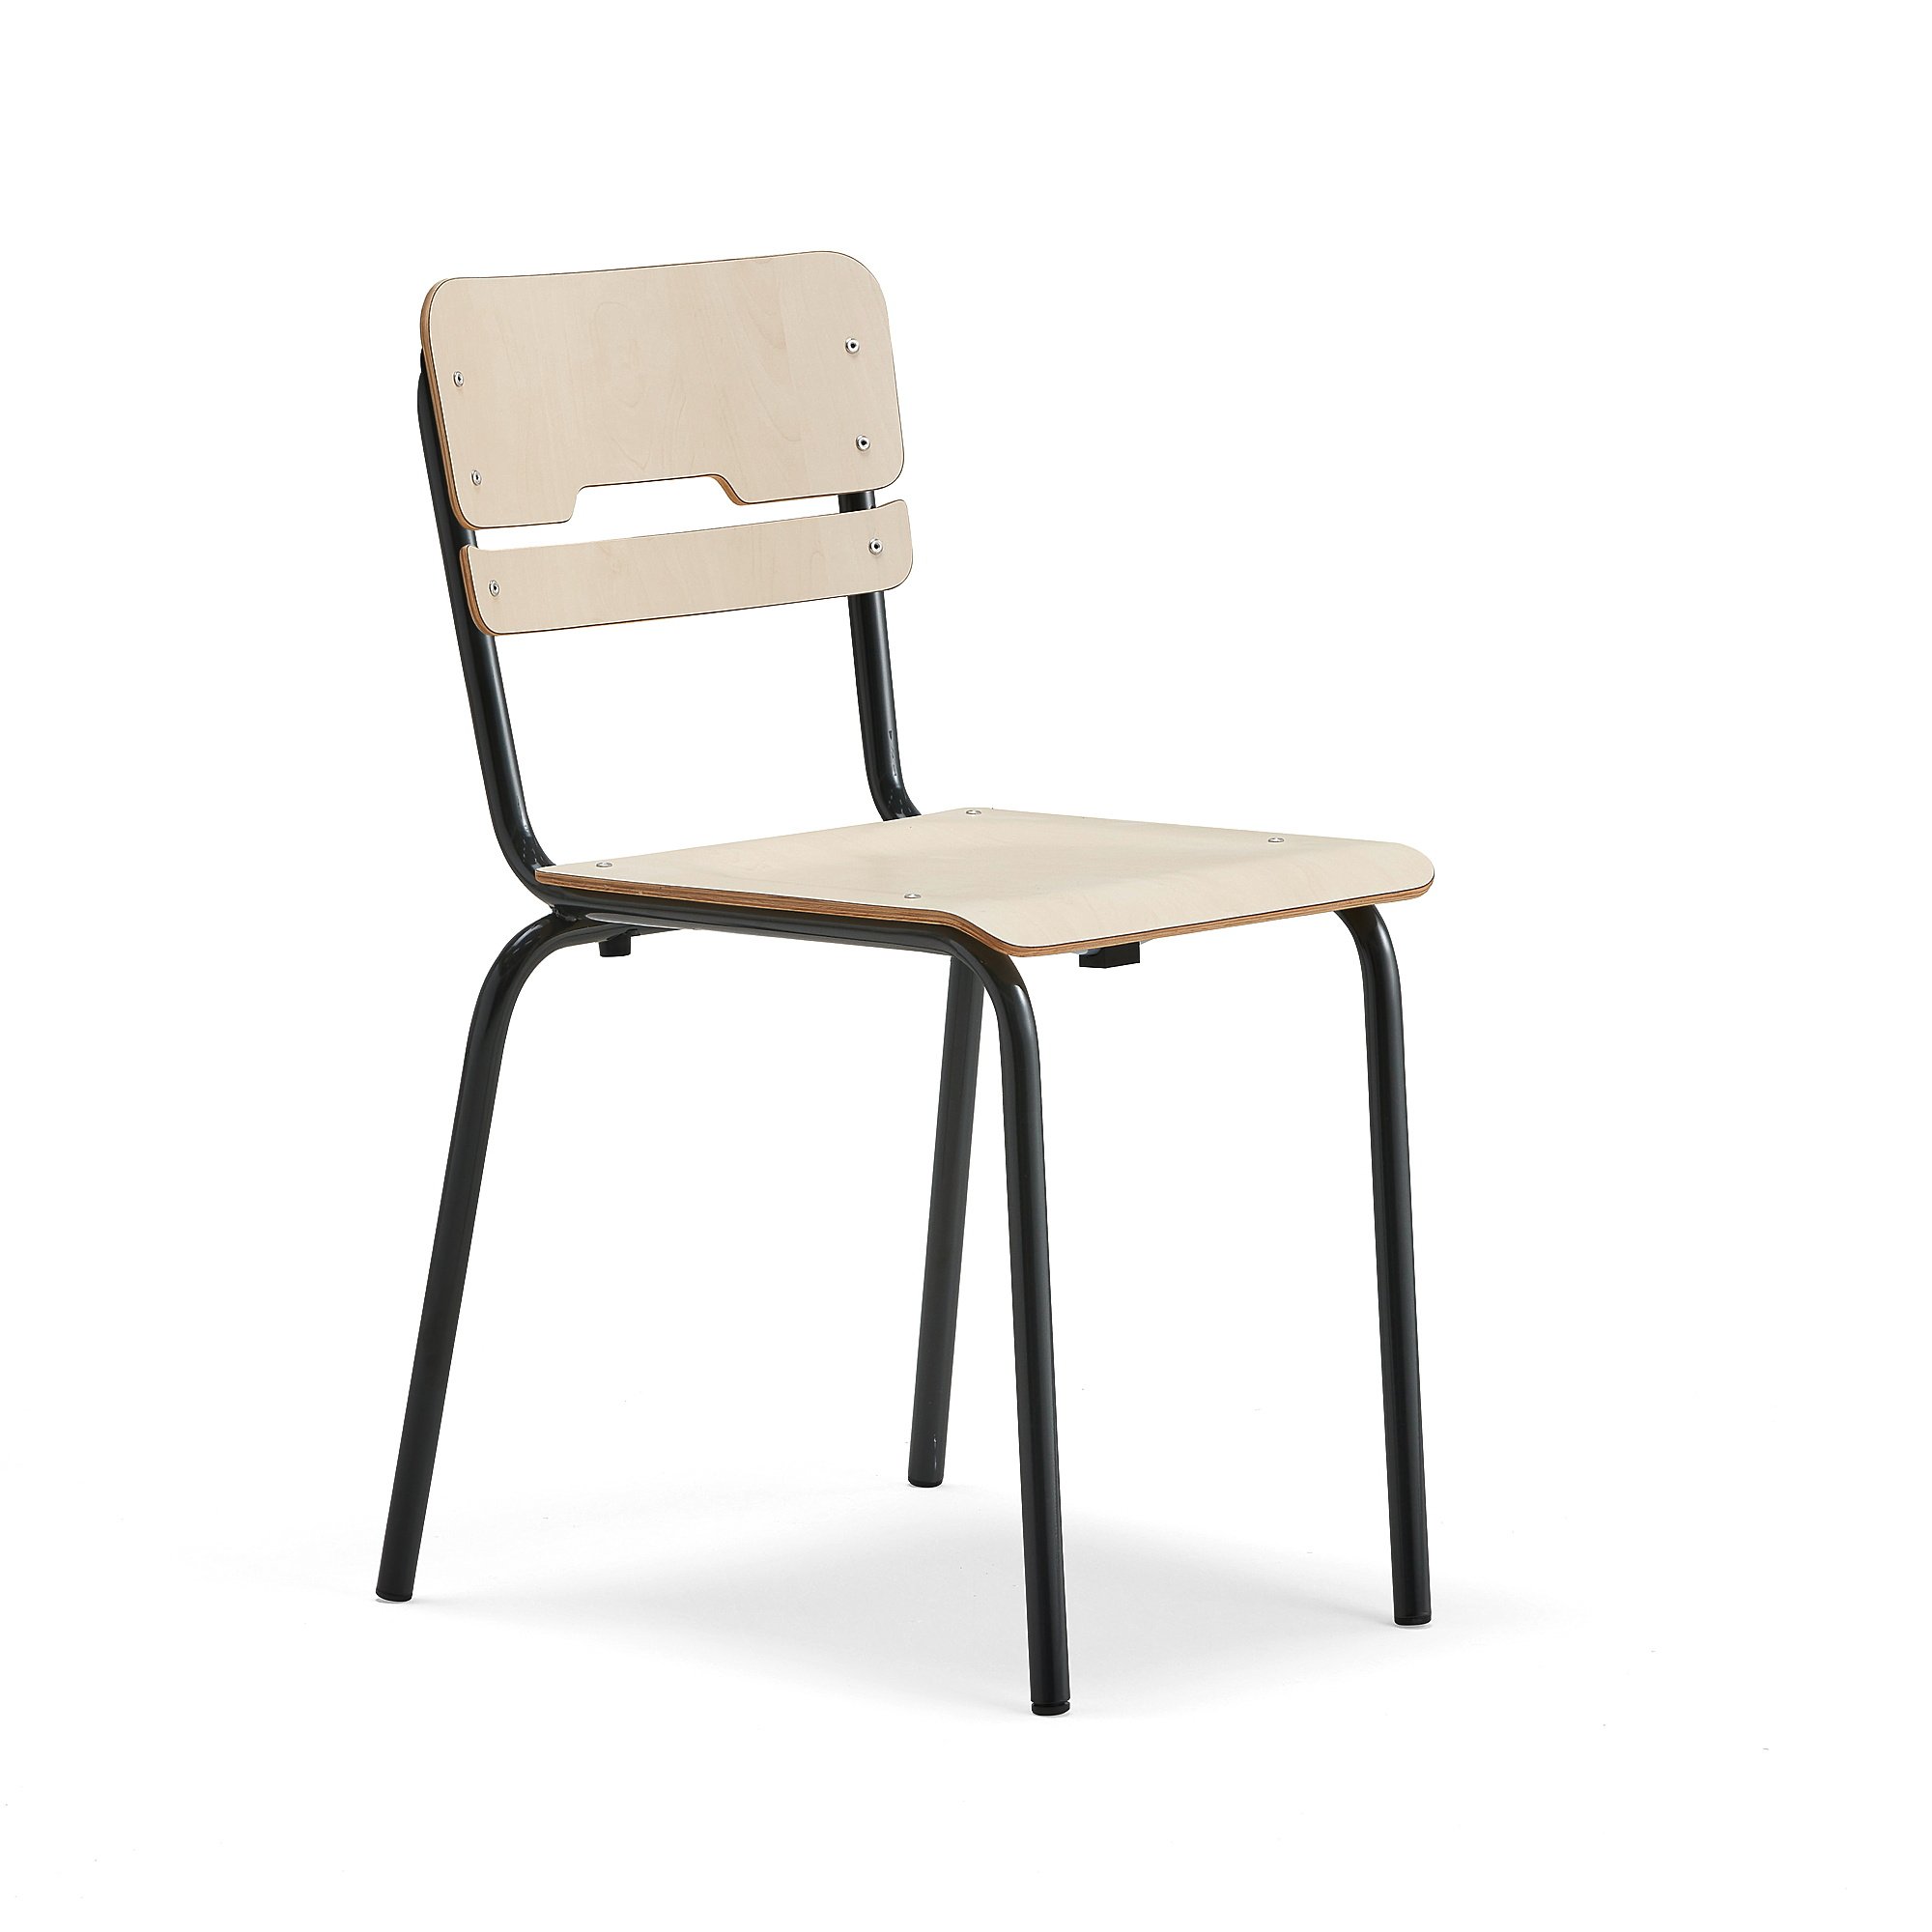 E-shop Školská stolička SCIENTIA, široké sedadlo, V 460 mm, antracit/breza